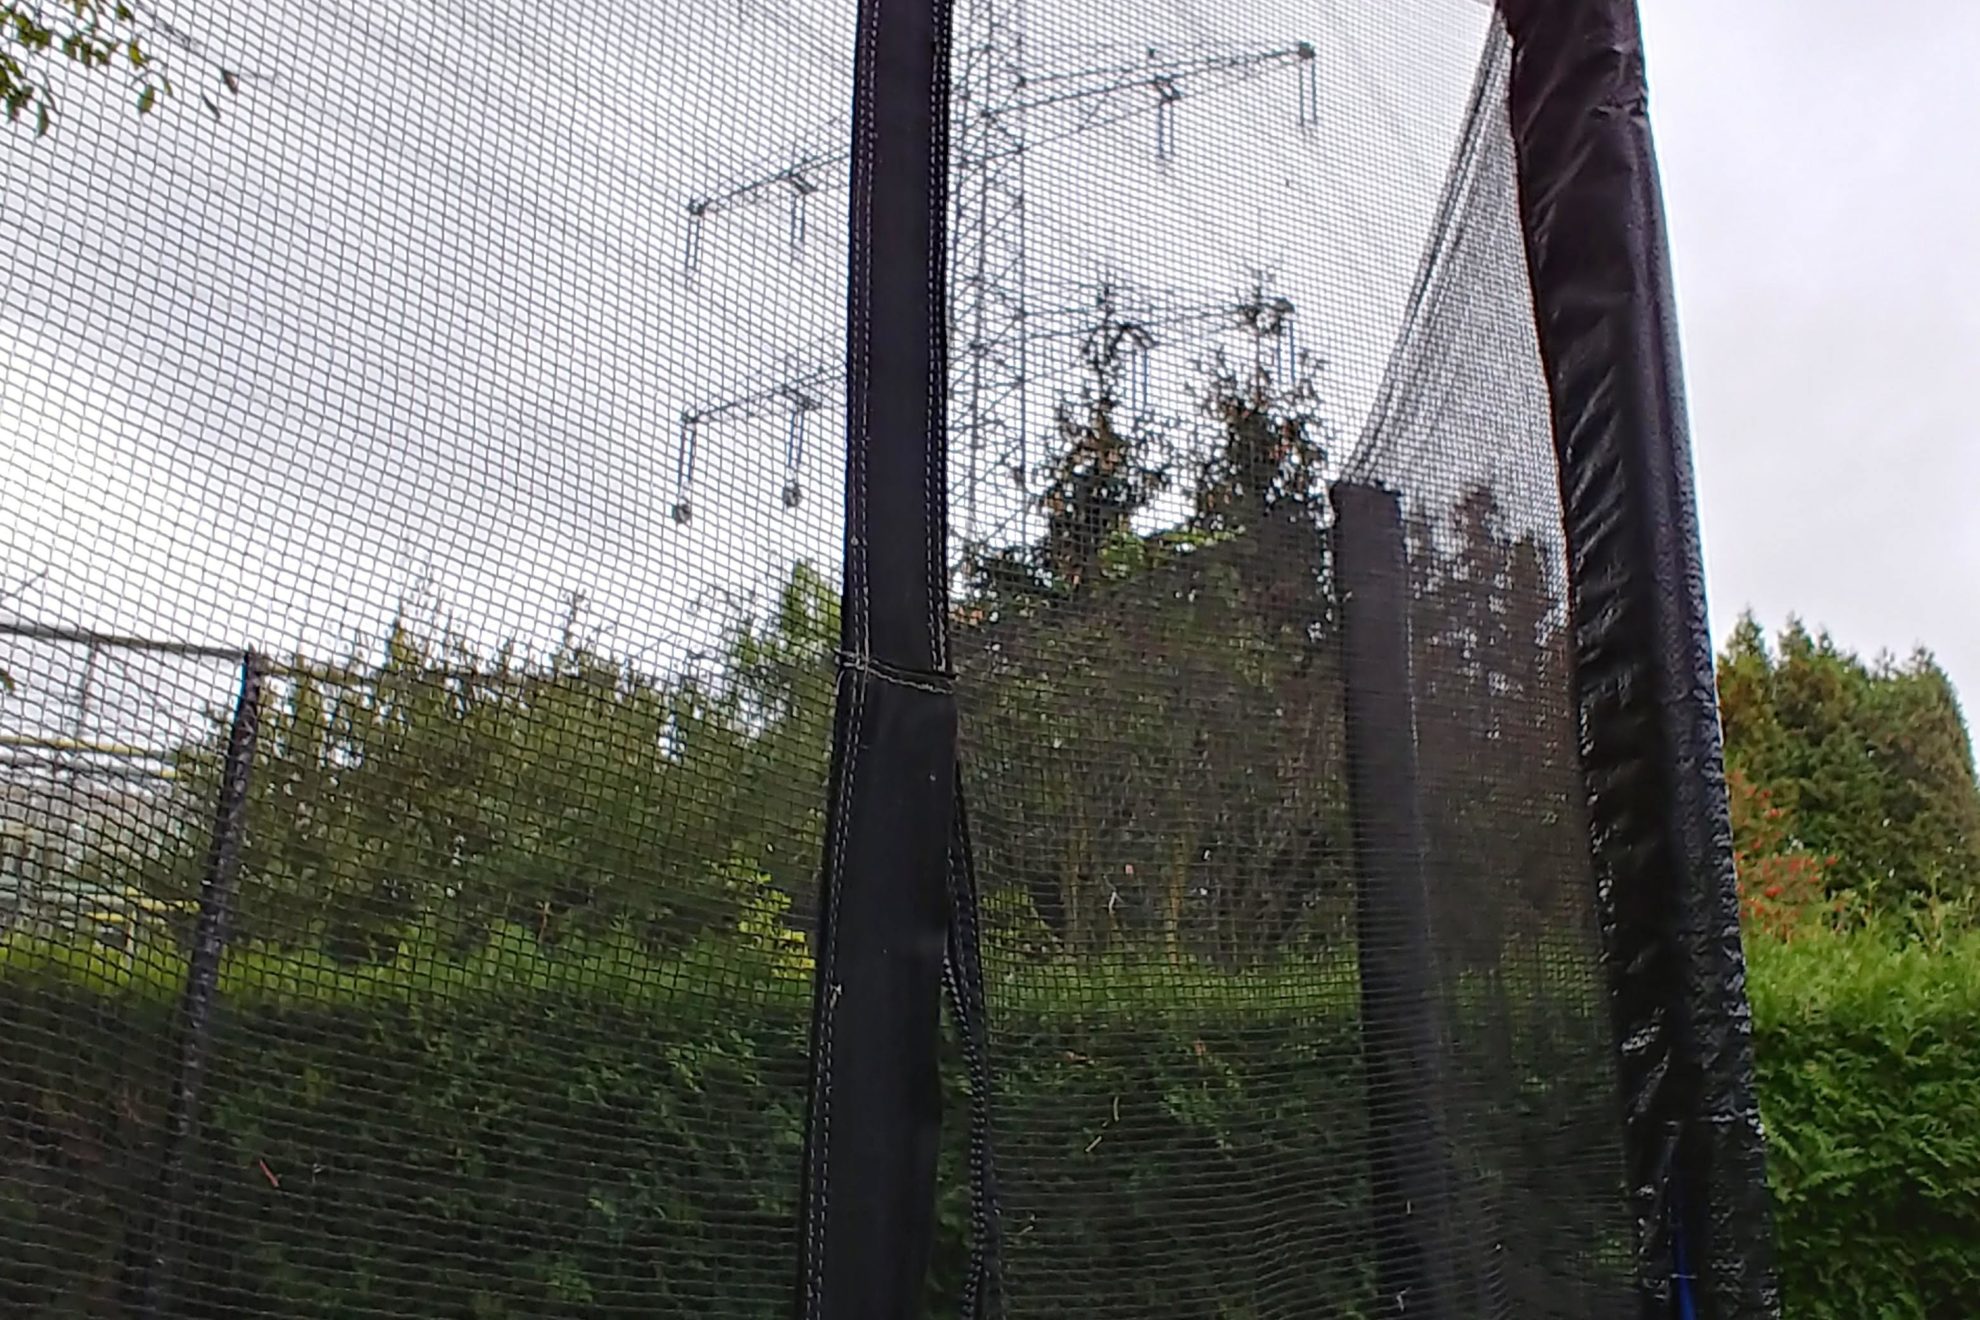 Blick aus einem Garten zur driekt daneben verlaufenden Ultranetleitung durch das Netz eines Trampolins